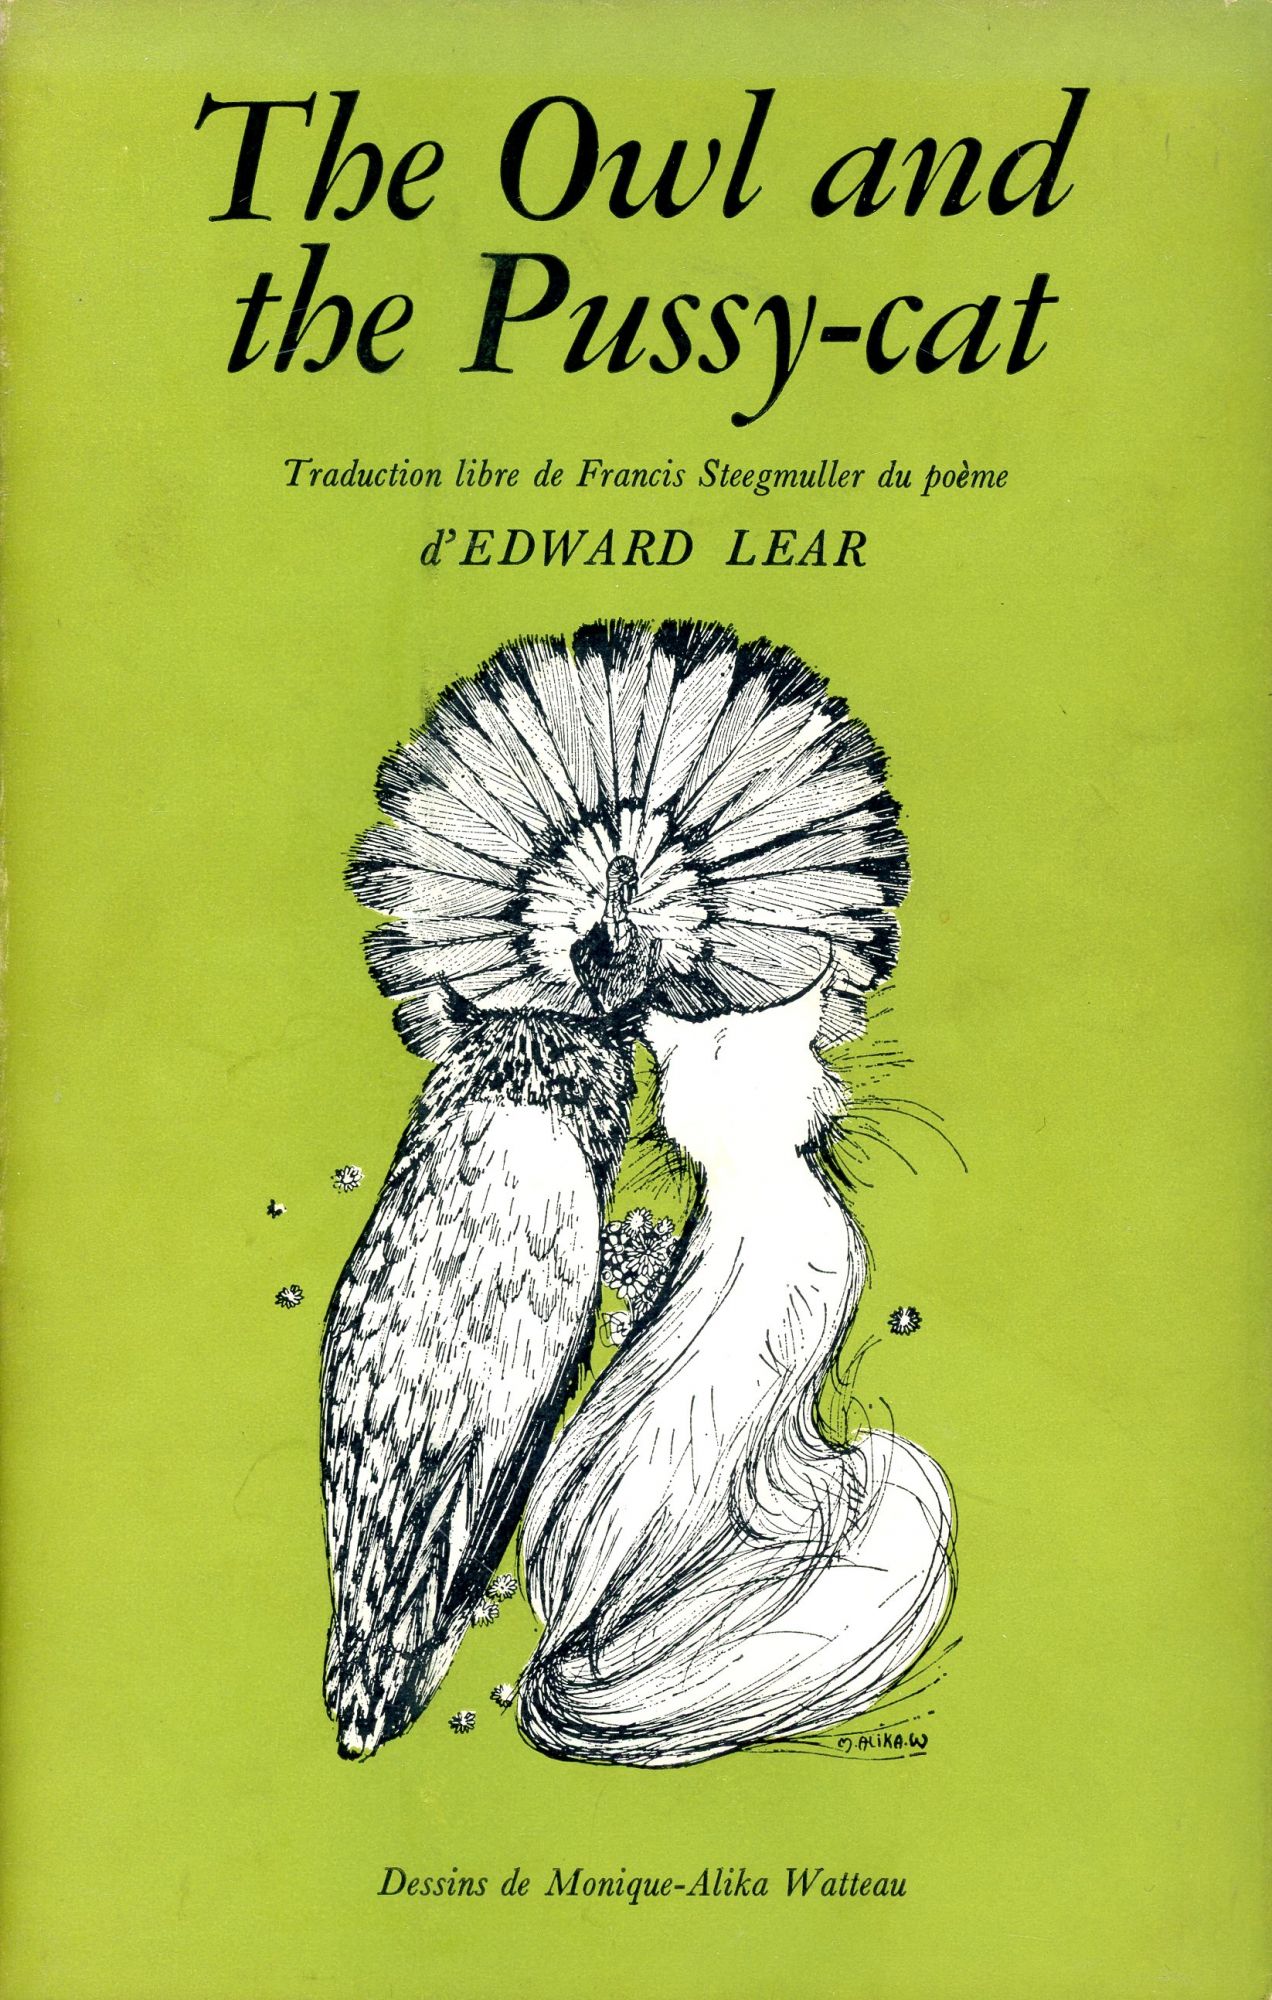 Le Hibou et la Poussiquette / The Owl and the Pussy-cat by Edward LEAR,  Francis Steegmuller, Monique-Alika Watteau on Bagatelle Books